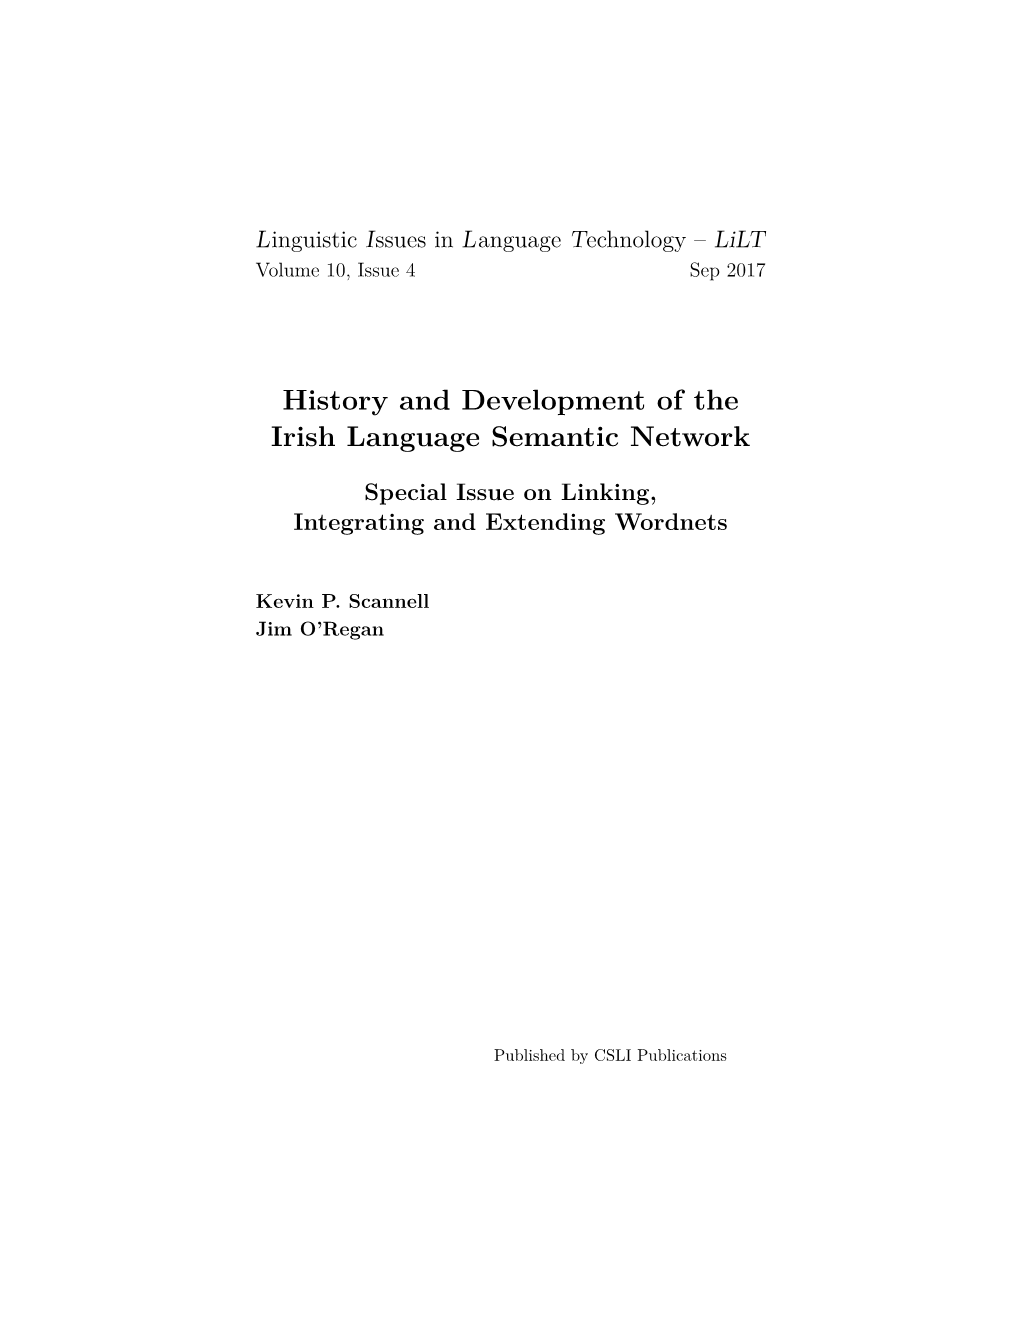 History and Development of the Irish Language Semantic Network